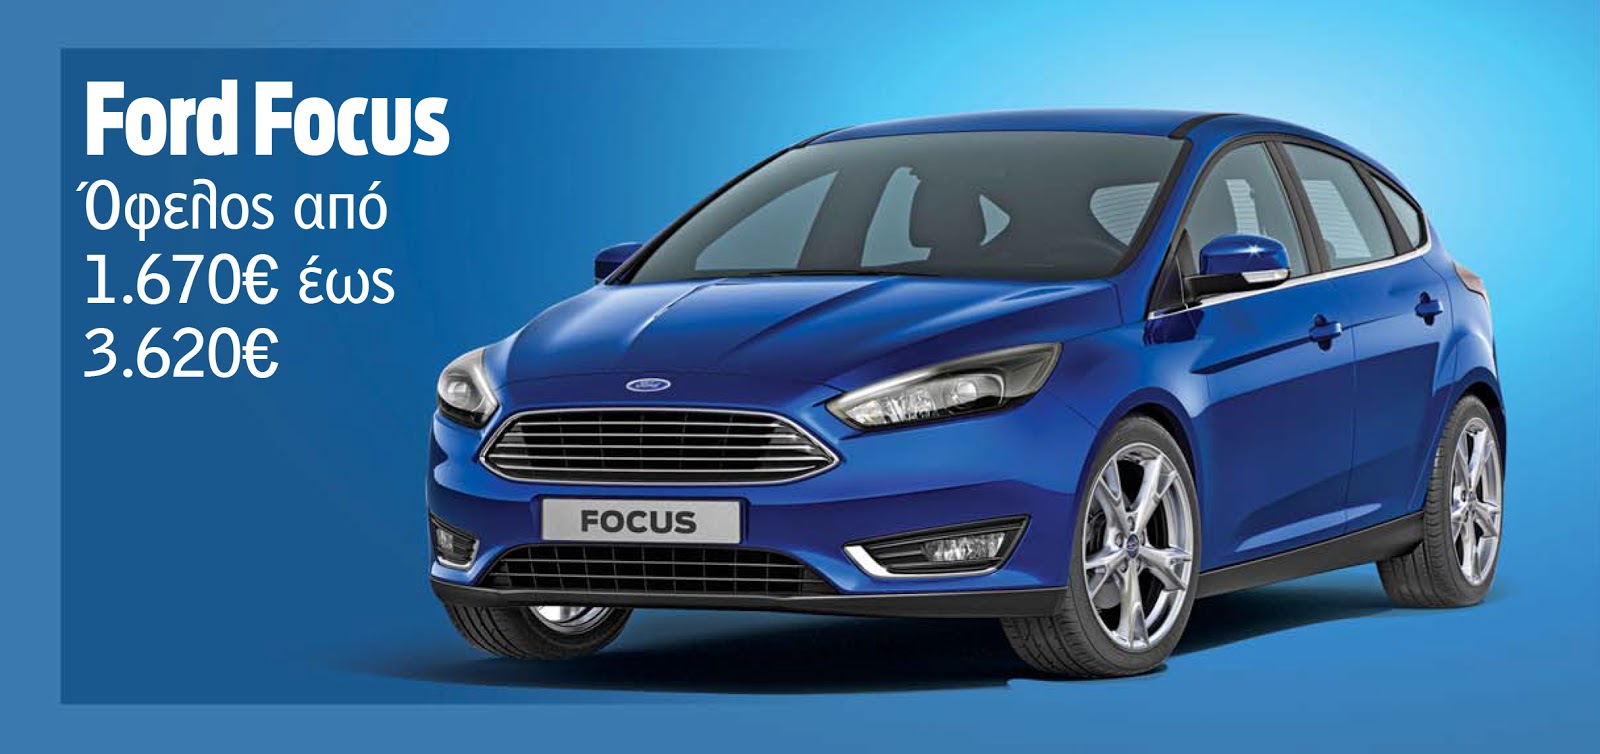 FOCUS Αποκτήστε το αγαπημένο σας Ford με όφελος έως και 5.690€!